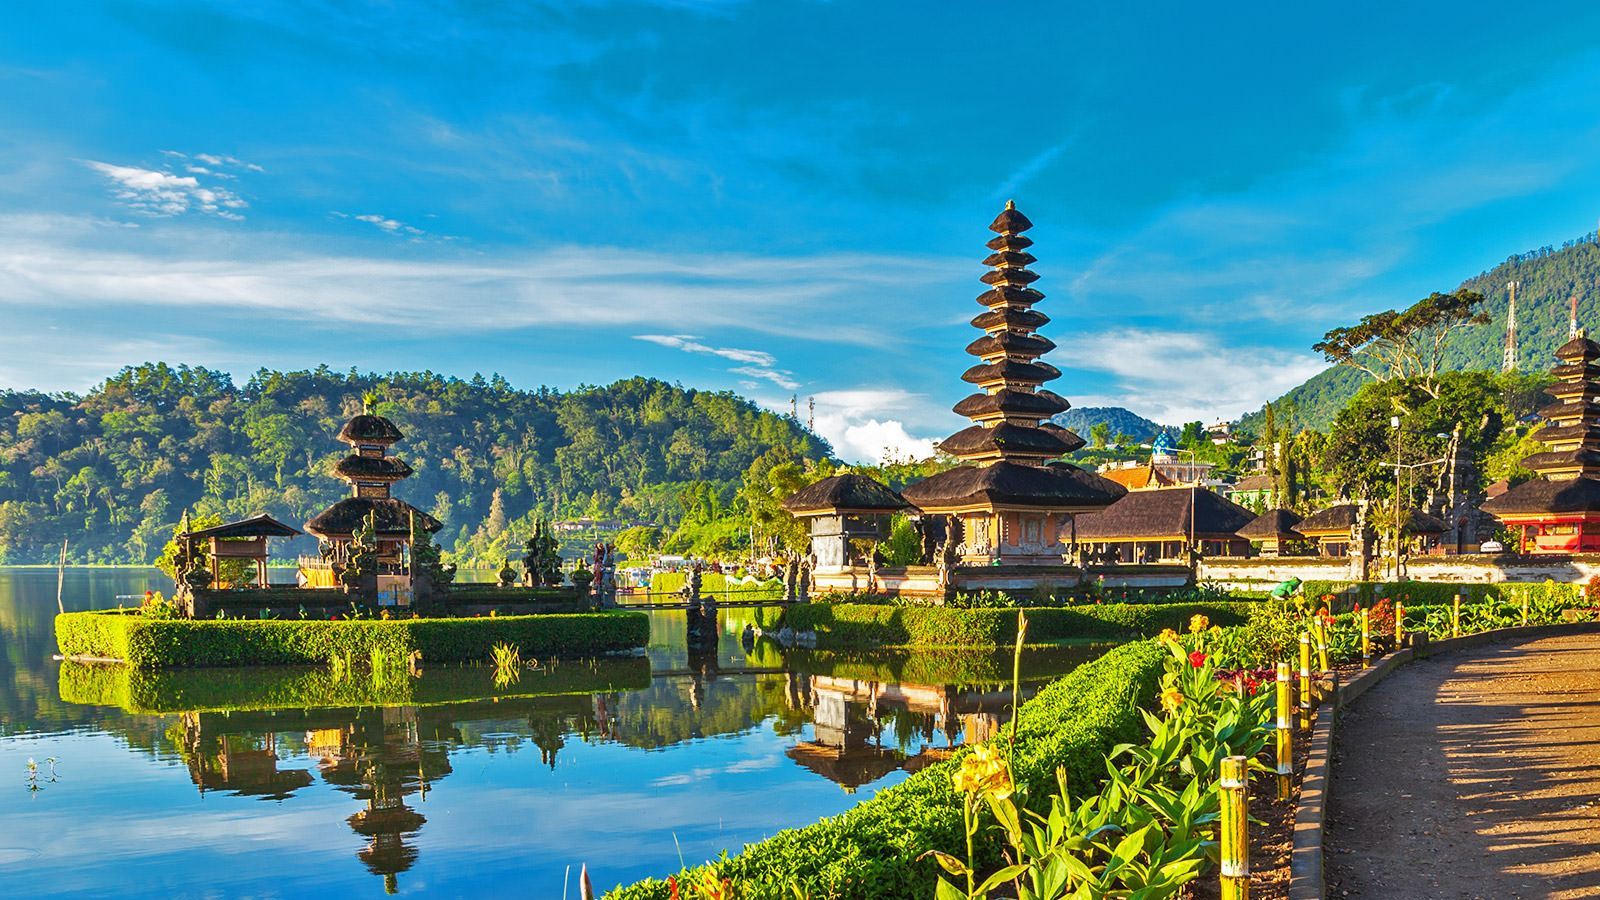 インドネシア・バリ島の観光客受け入れ再開は2021年まで延期されるかも・・・。